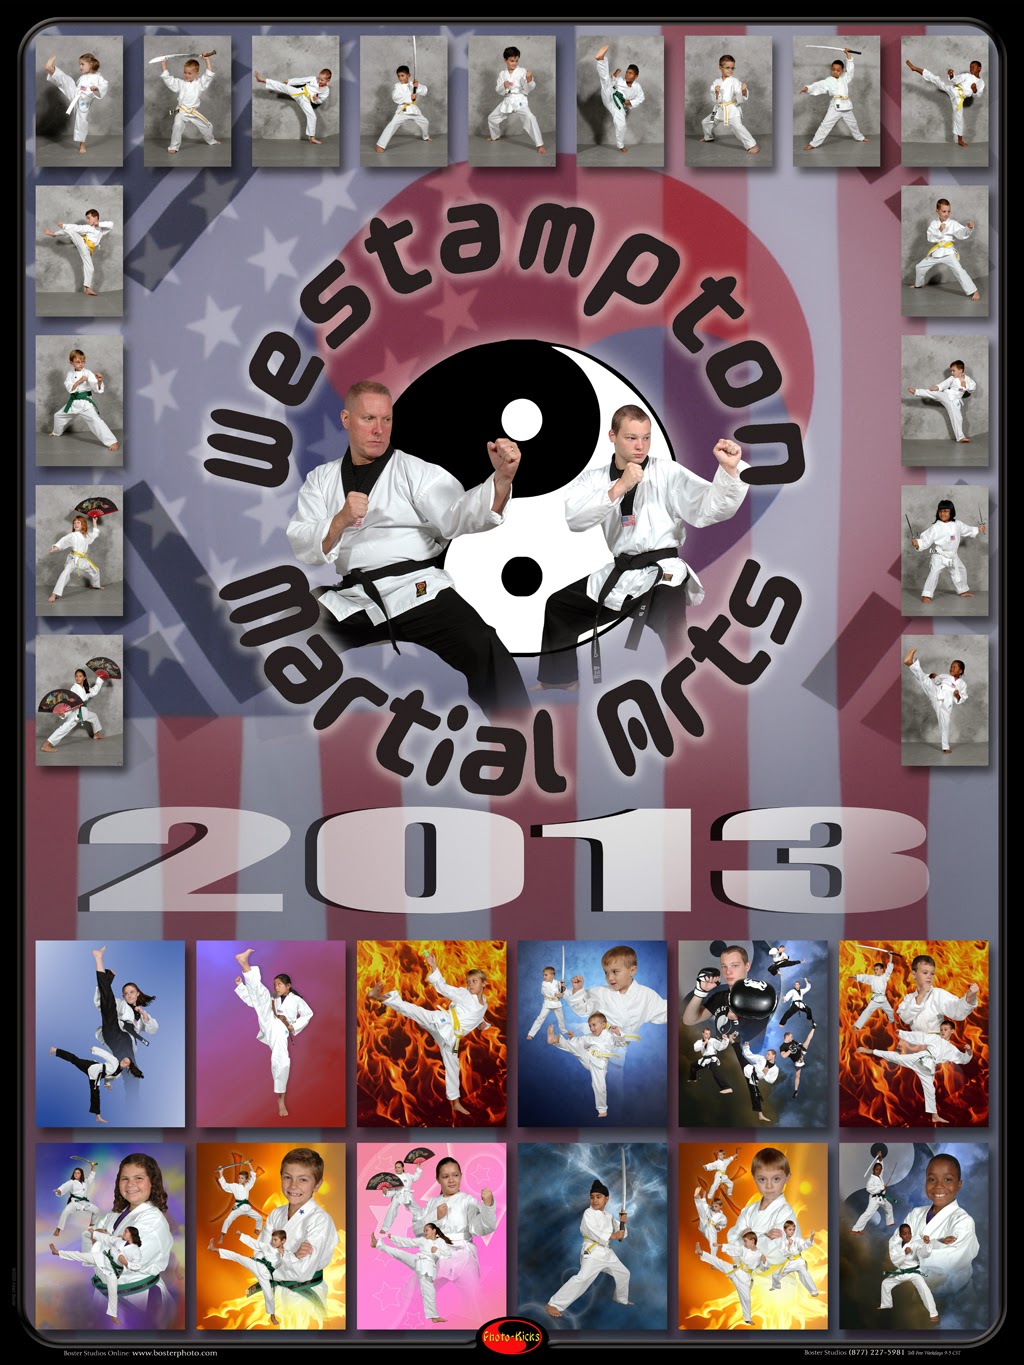 Westampton Martial Arts | 897 Rancocas Rd Unit 13, Westampton, NJ 08060 | Phone: (609) 784-8143